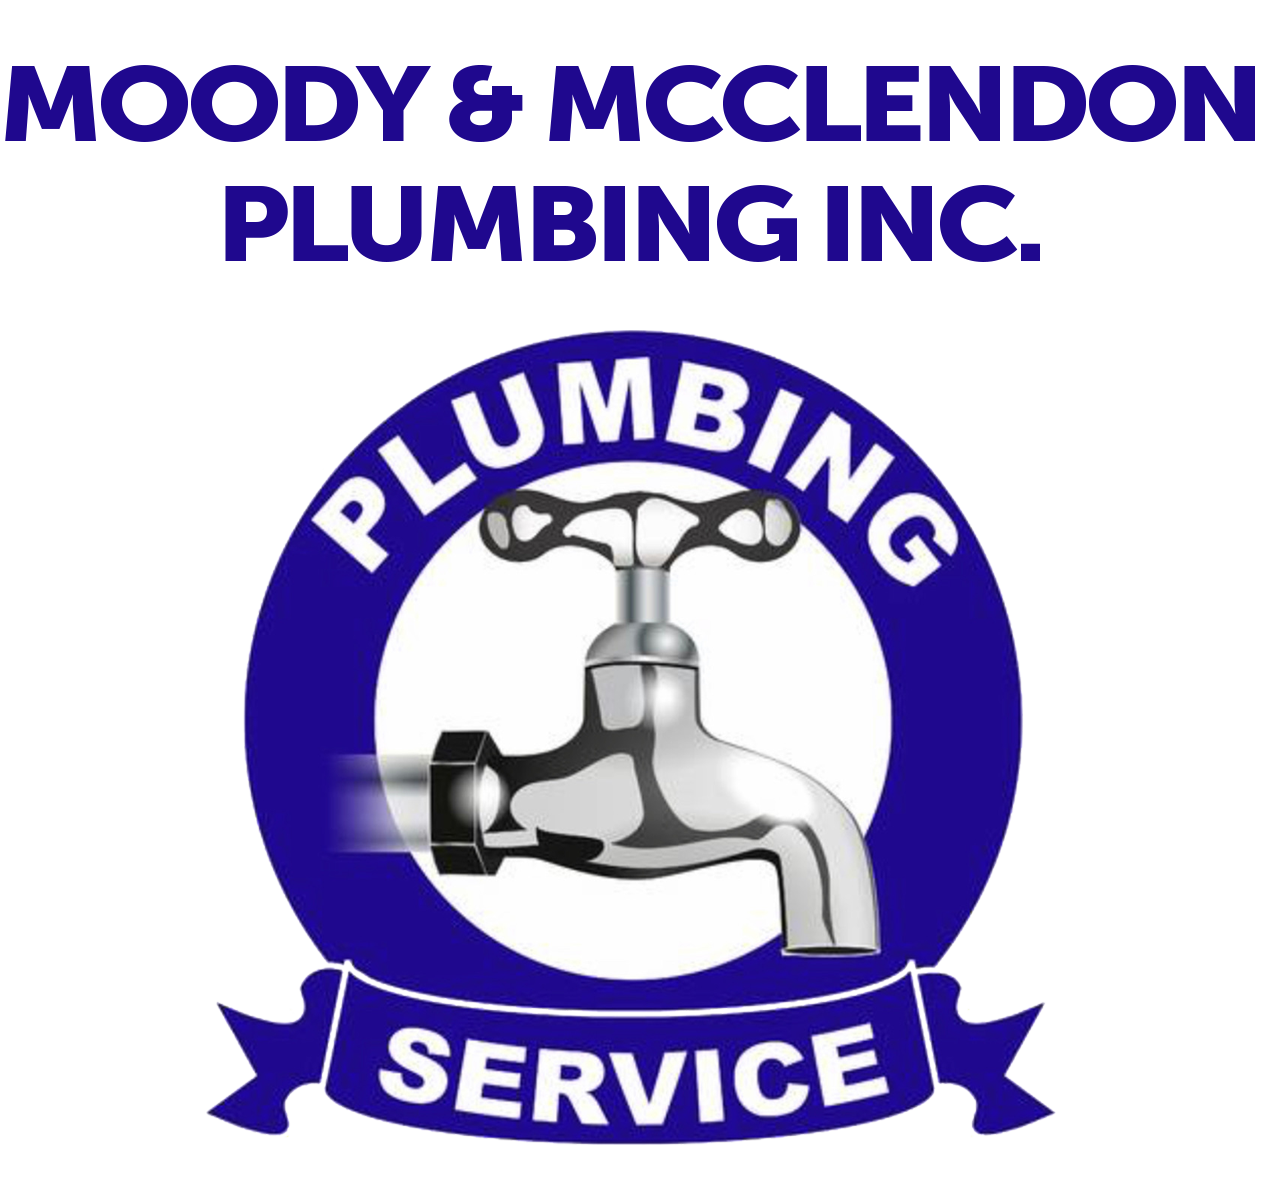 Victor Moody Plumbing Inc